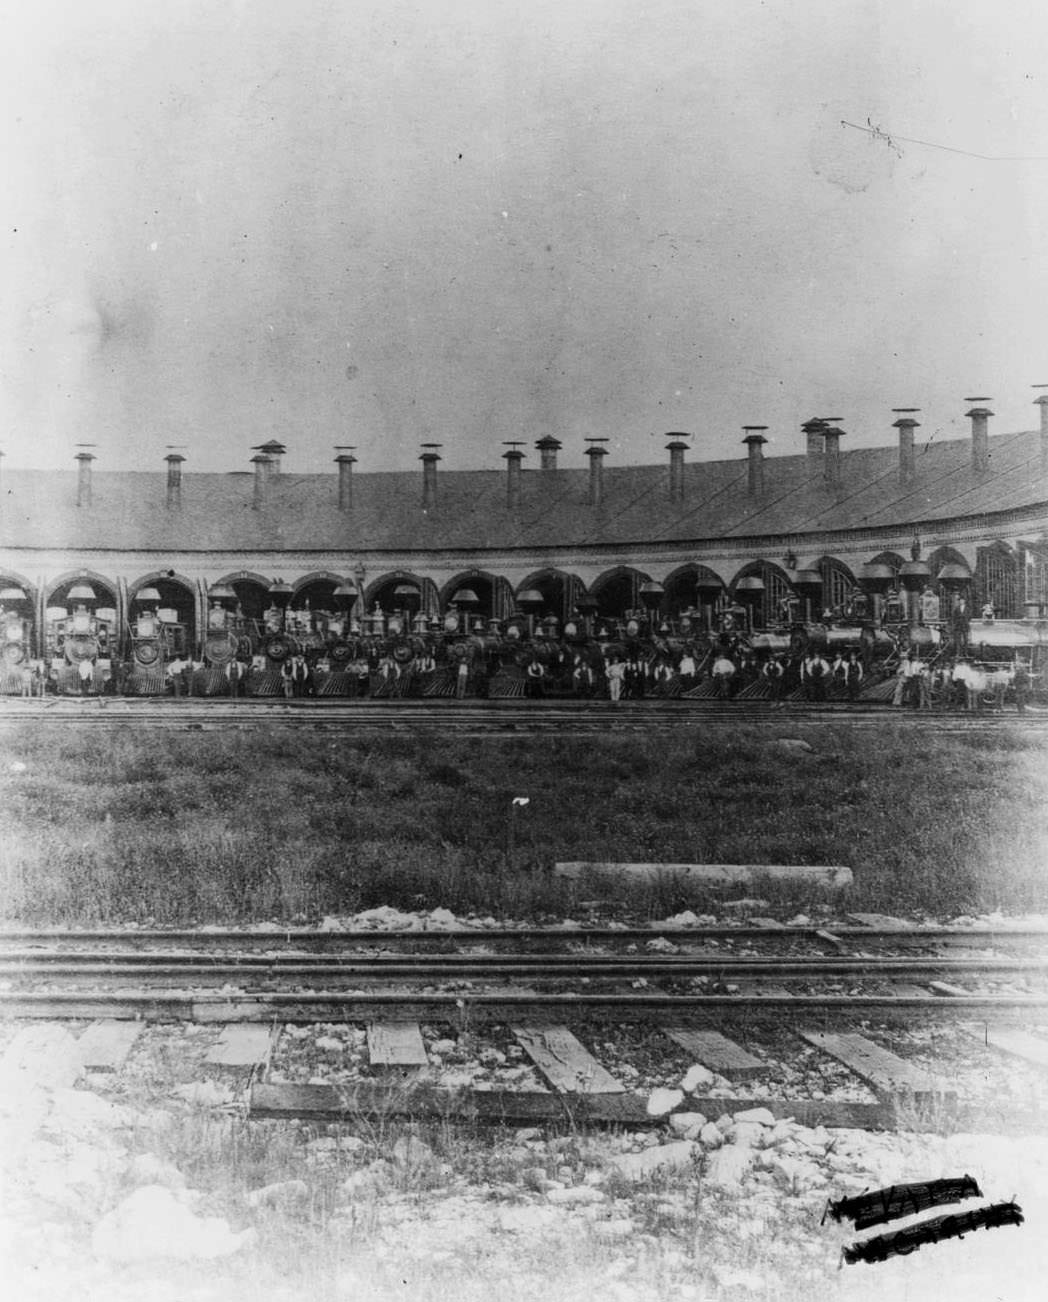 Railroad roundhouse with wood-burning locomotives, 1860